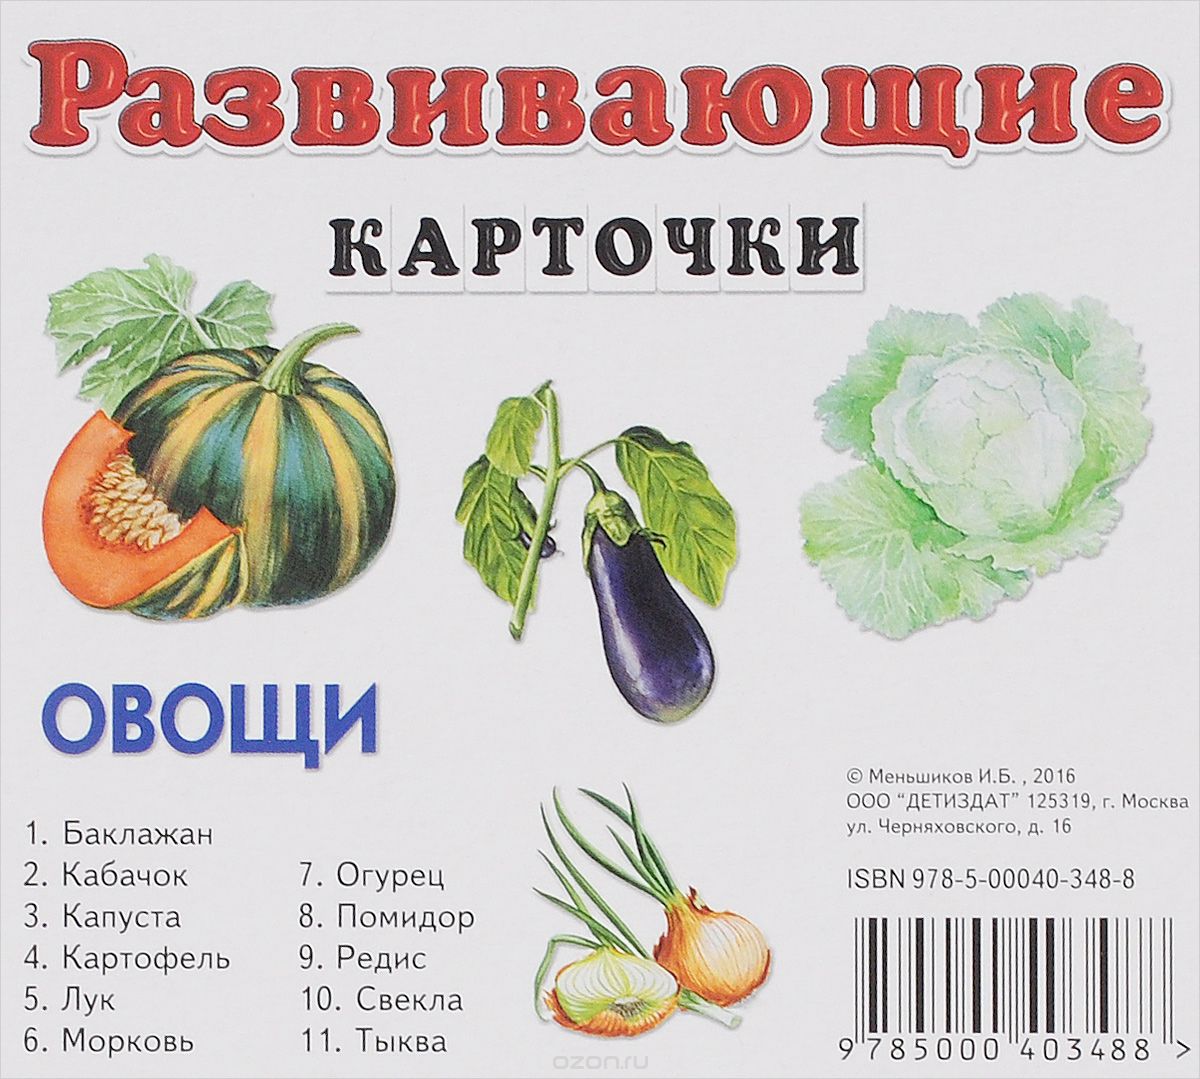 Овощи. Развивающие карточки (набор из 11 карточек), И. Б. Меньшиков